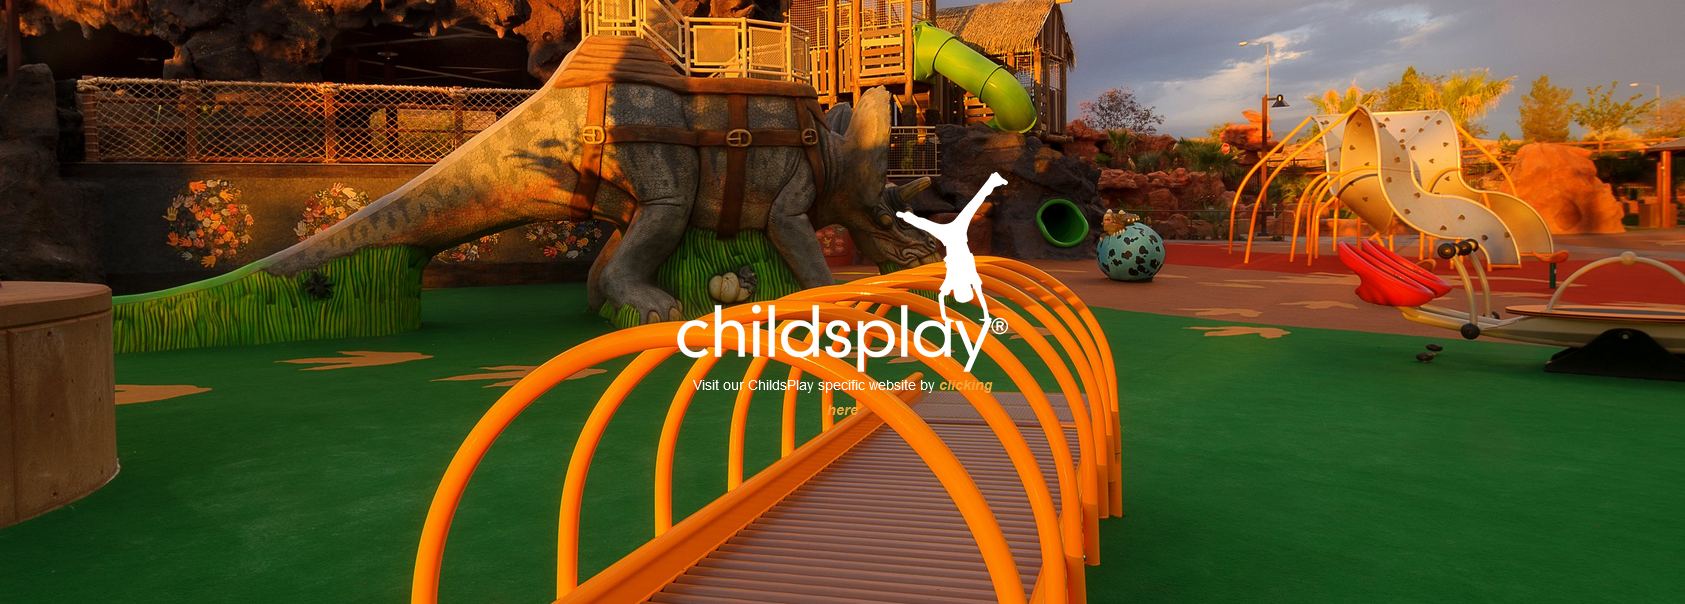 Childsplay Safer Playground Systems